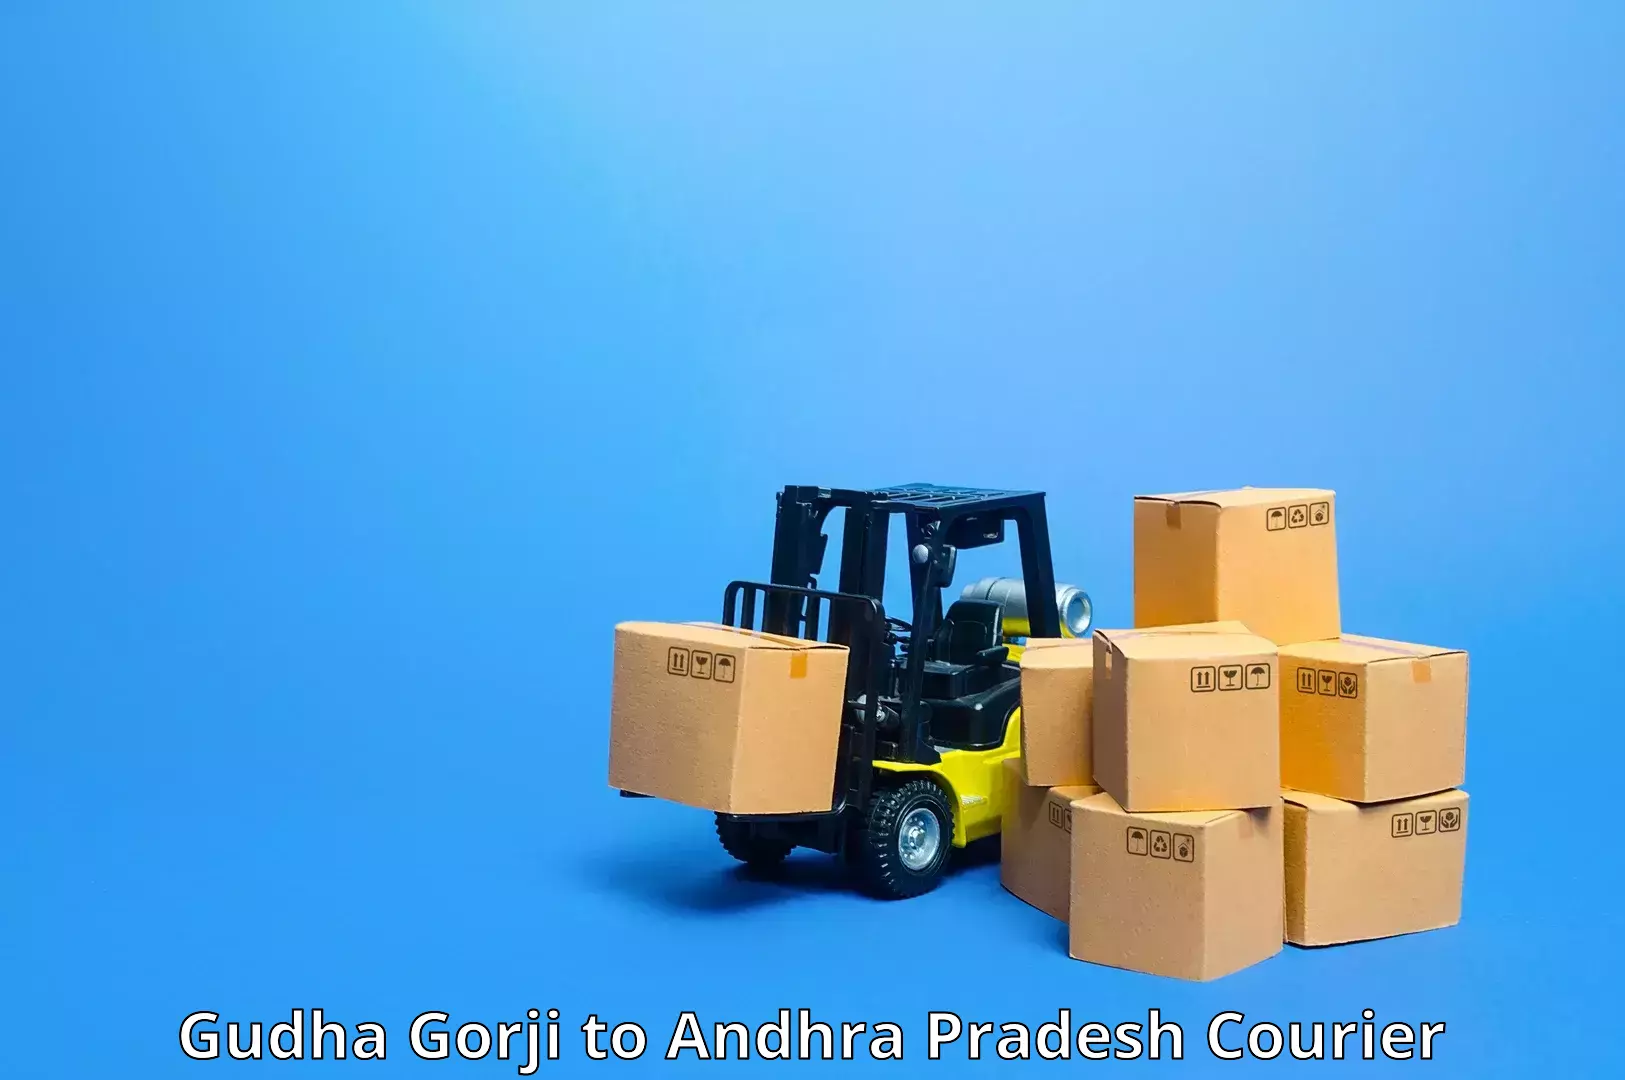 International parcel service Gudha Gorji to Giddalur